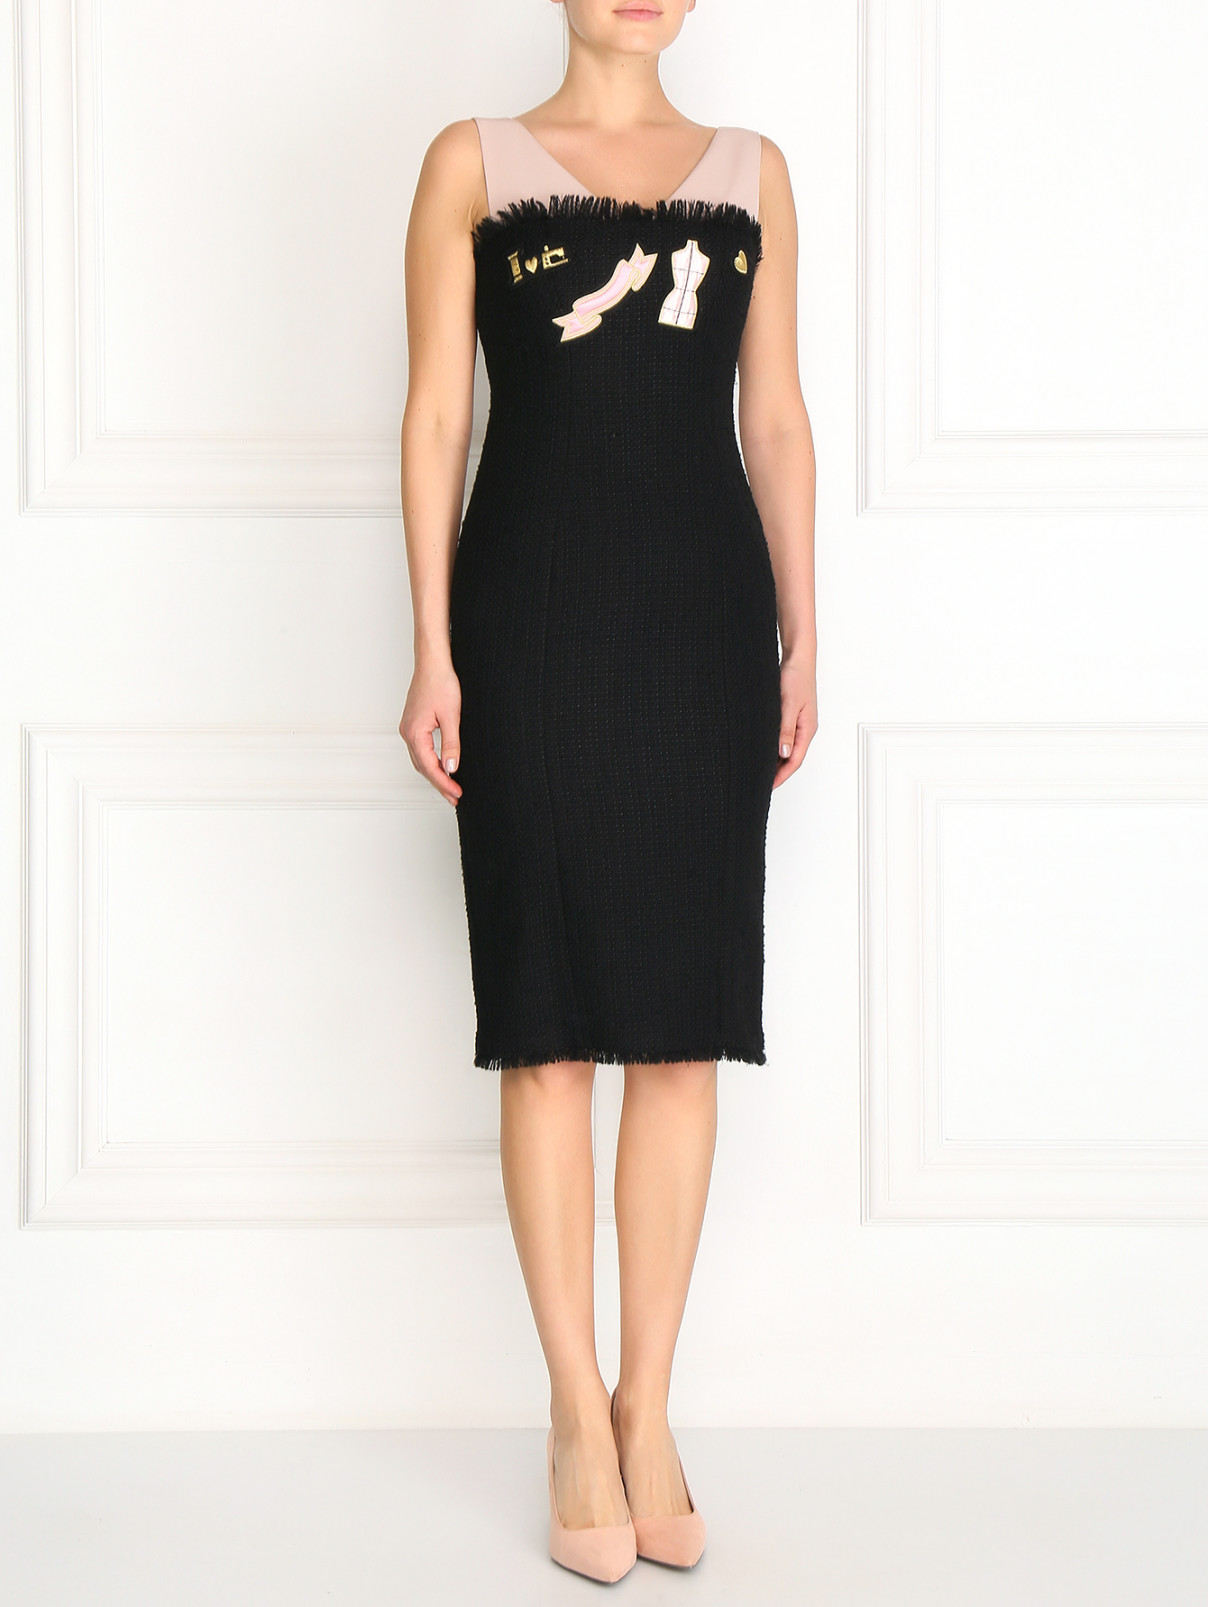 Платье-футляр из шерсти декорированное вышивкой Moschino Cheap&Chic  –  Модель Общий вид  – Цвет:  Черный